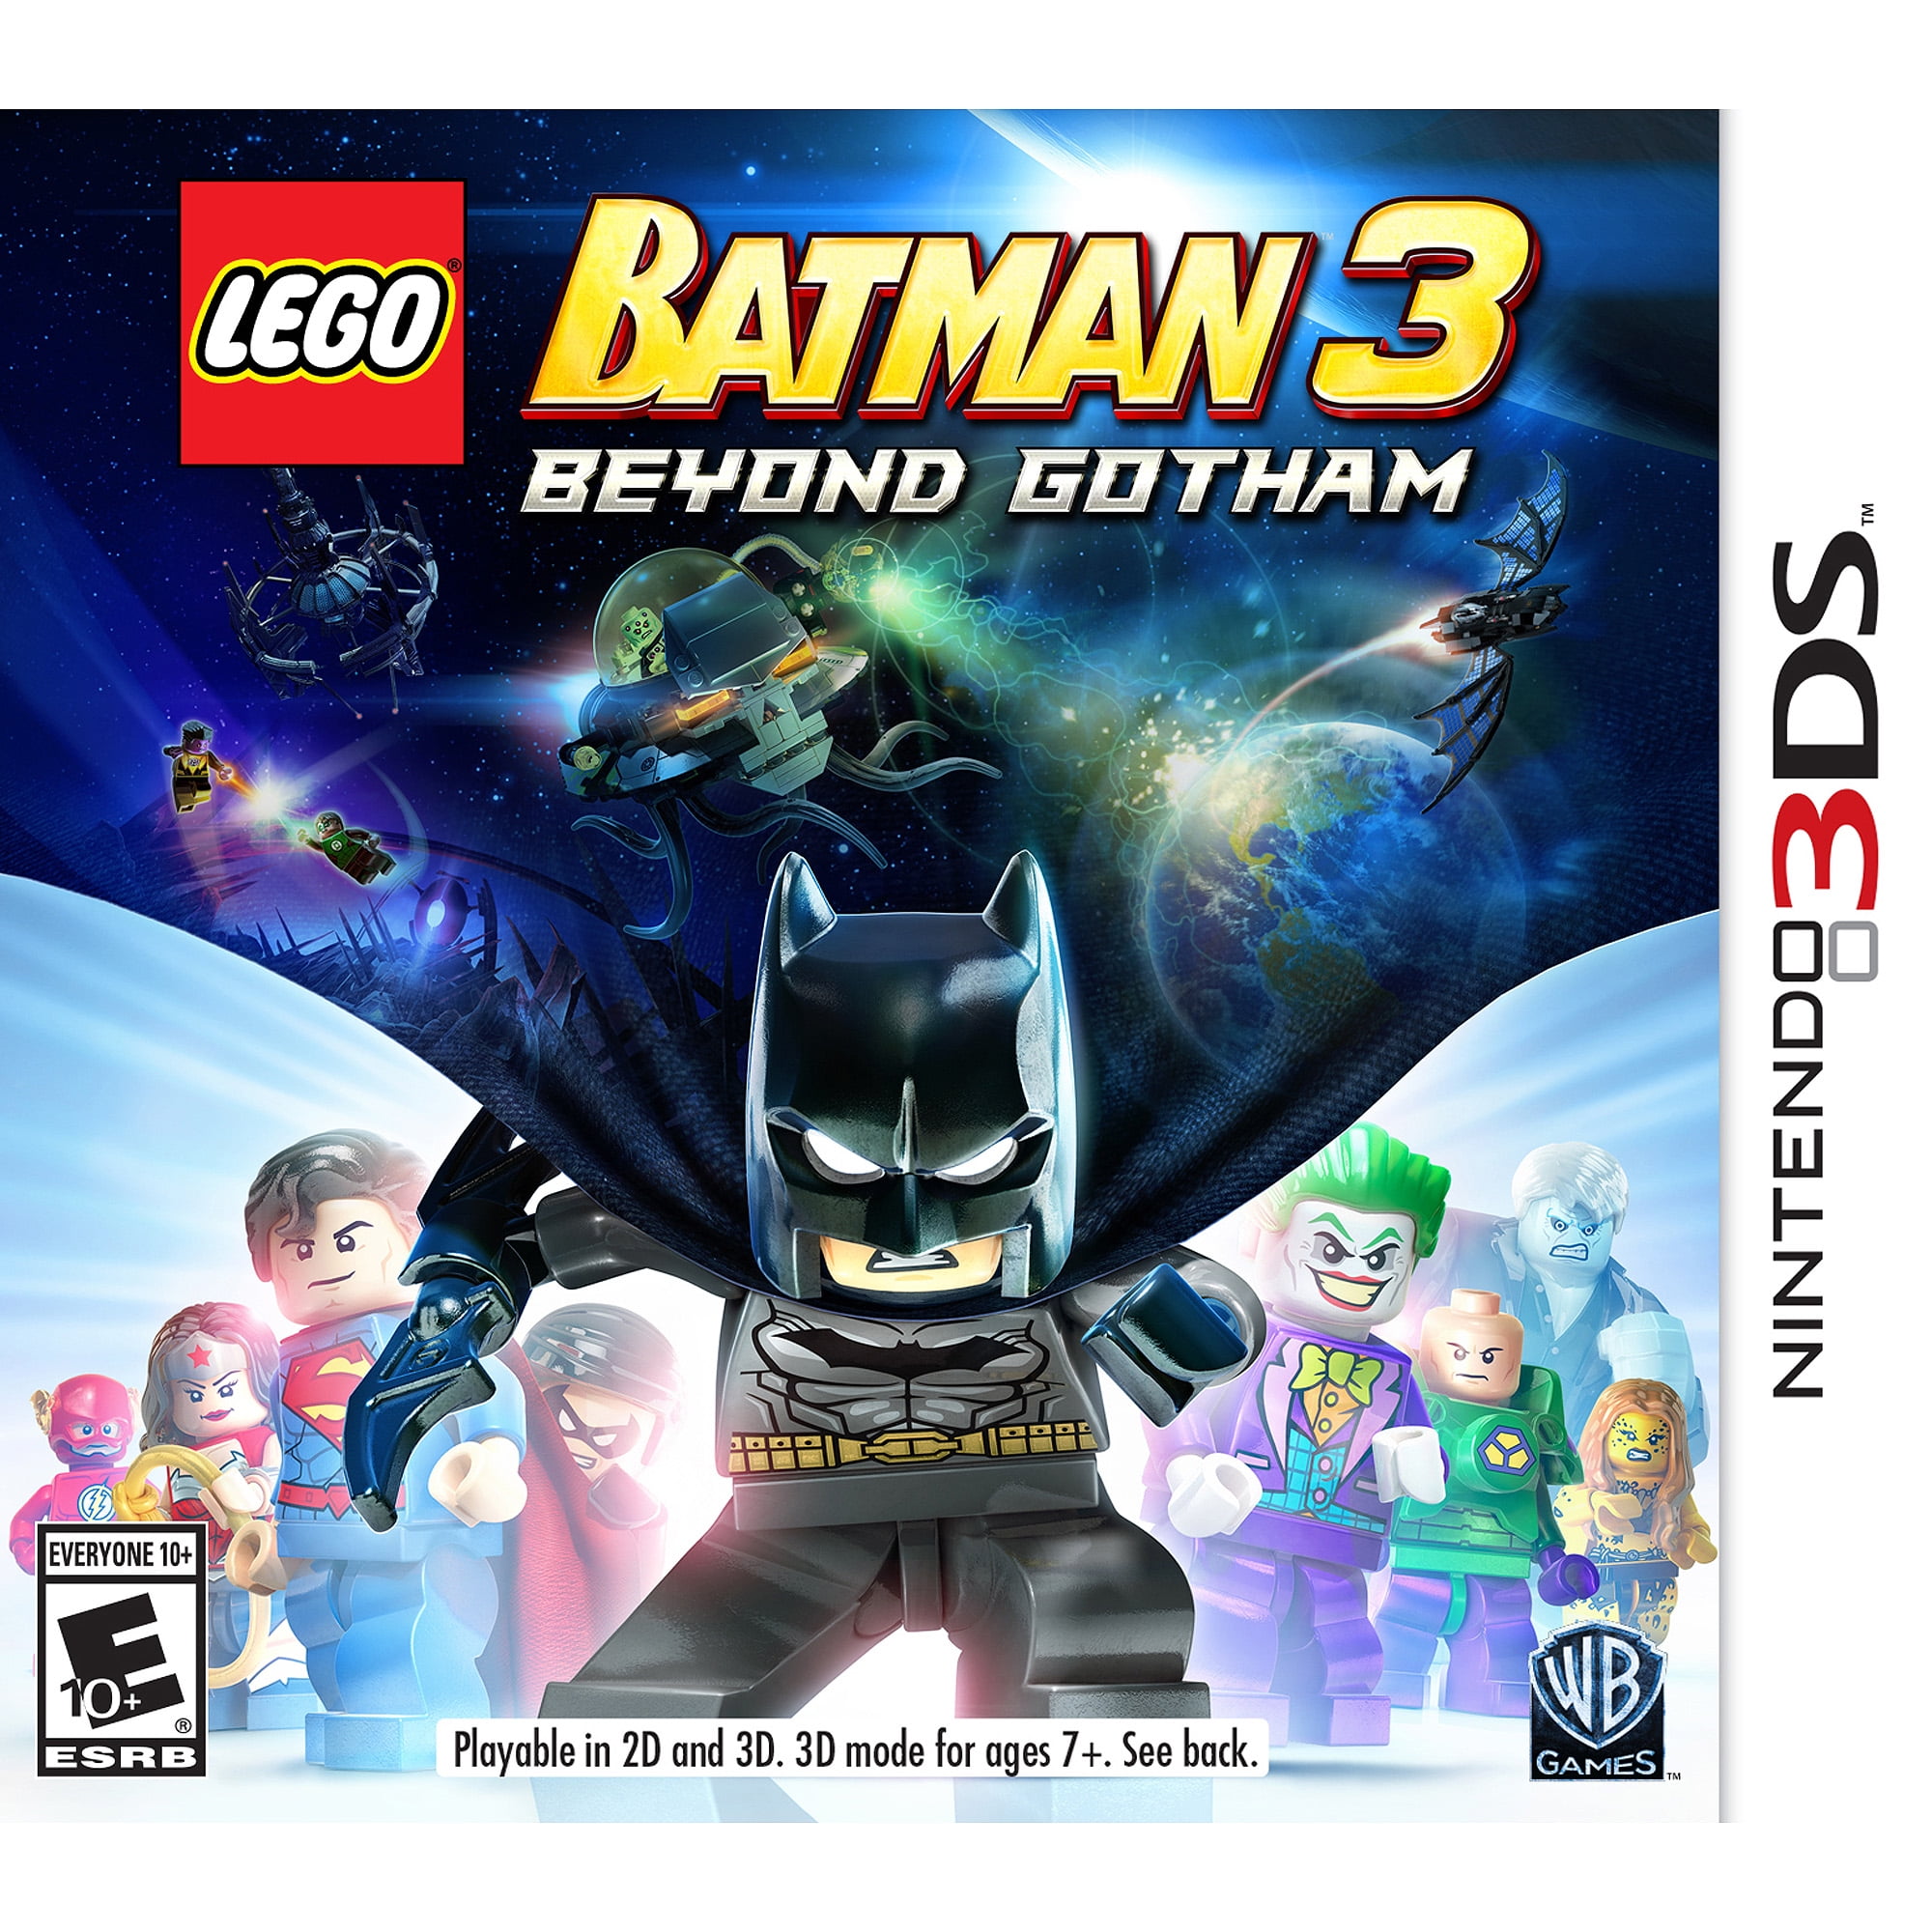 Lego Batman 3 Beyond Gotham, CR, Game Boy Advance, plants Vs